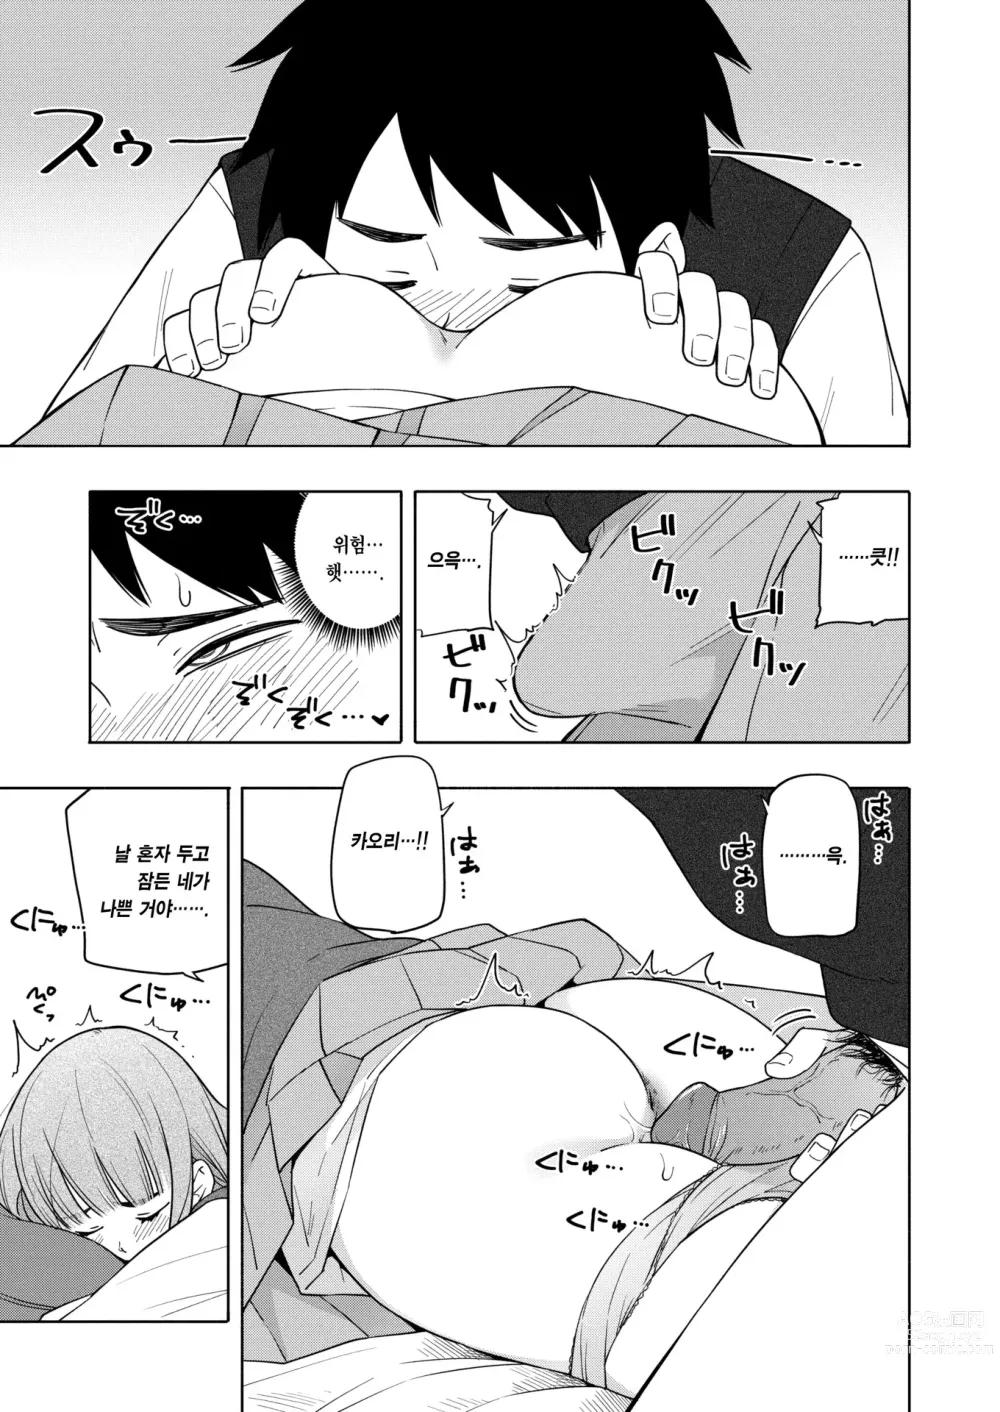 Page 9 of manga Kaori Kaoru (decensored)